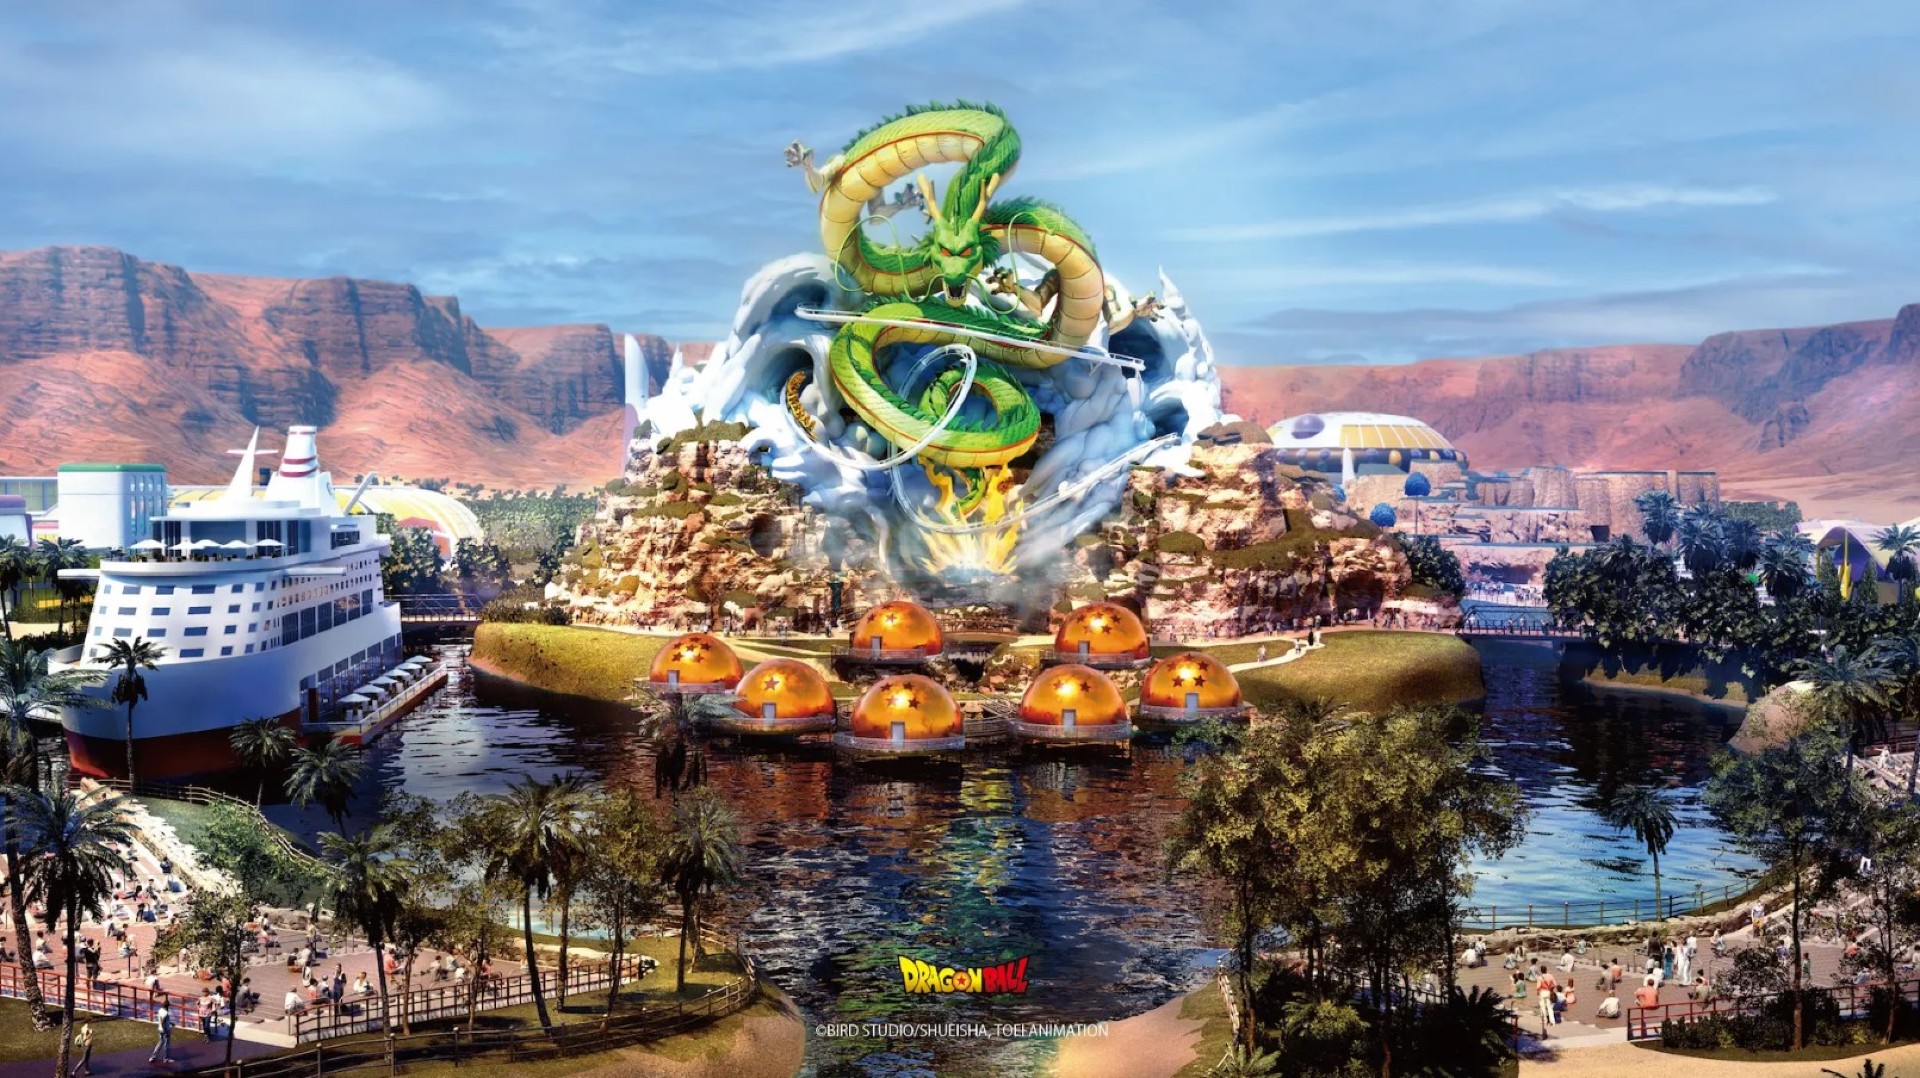 เปิดตัวสวนสนุก Dragon Ball แห่งเดียวในโลก ณ ประเทศซาอุดิอาระเบีย